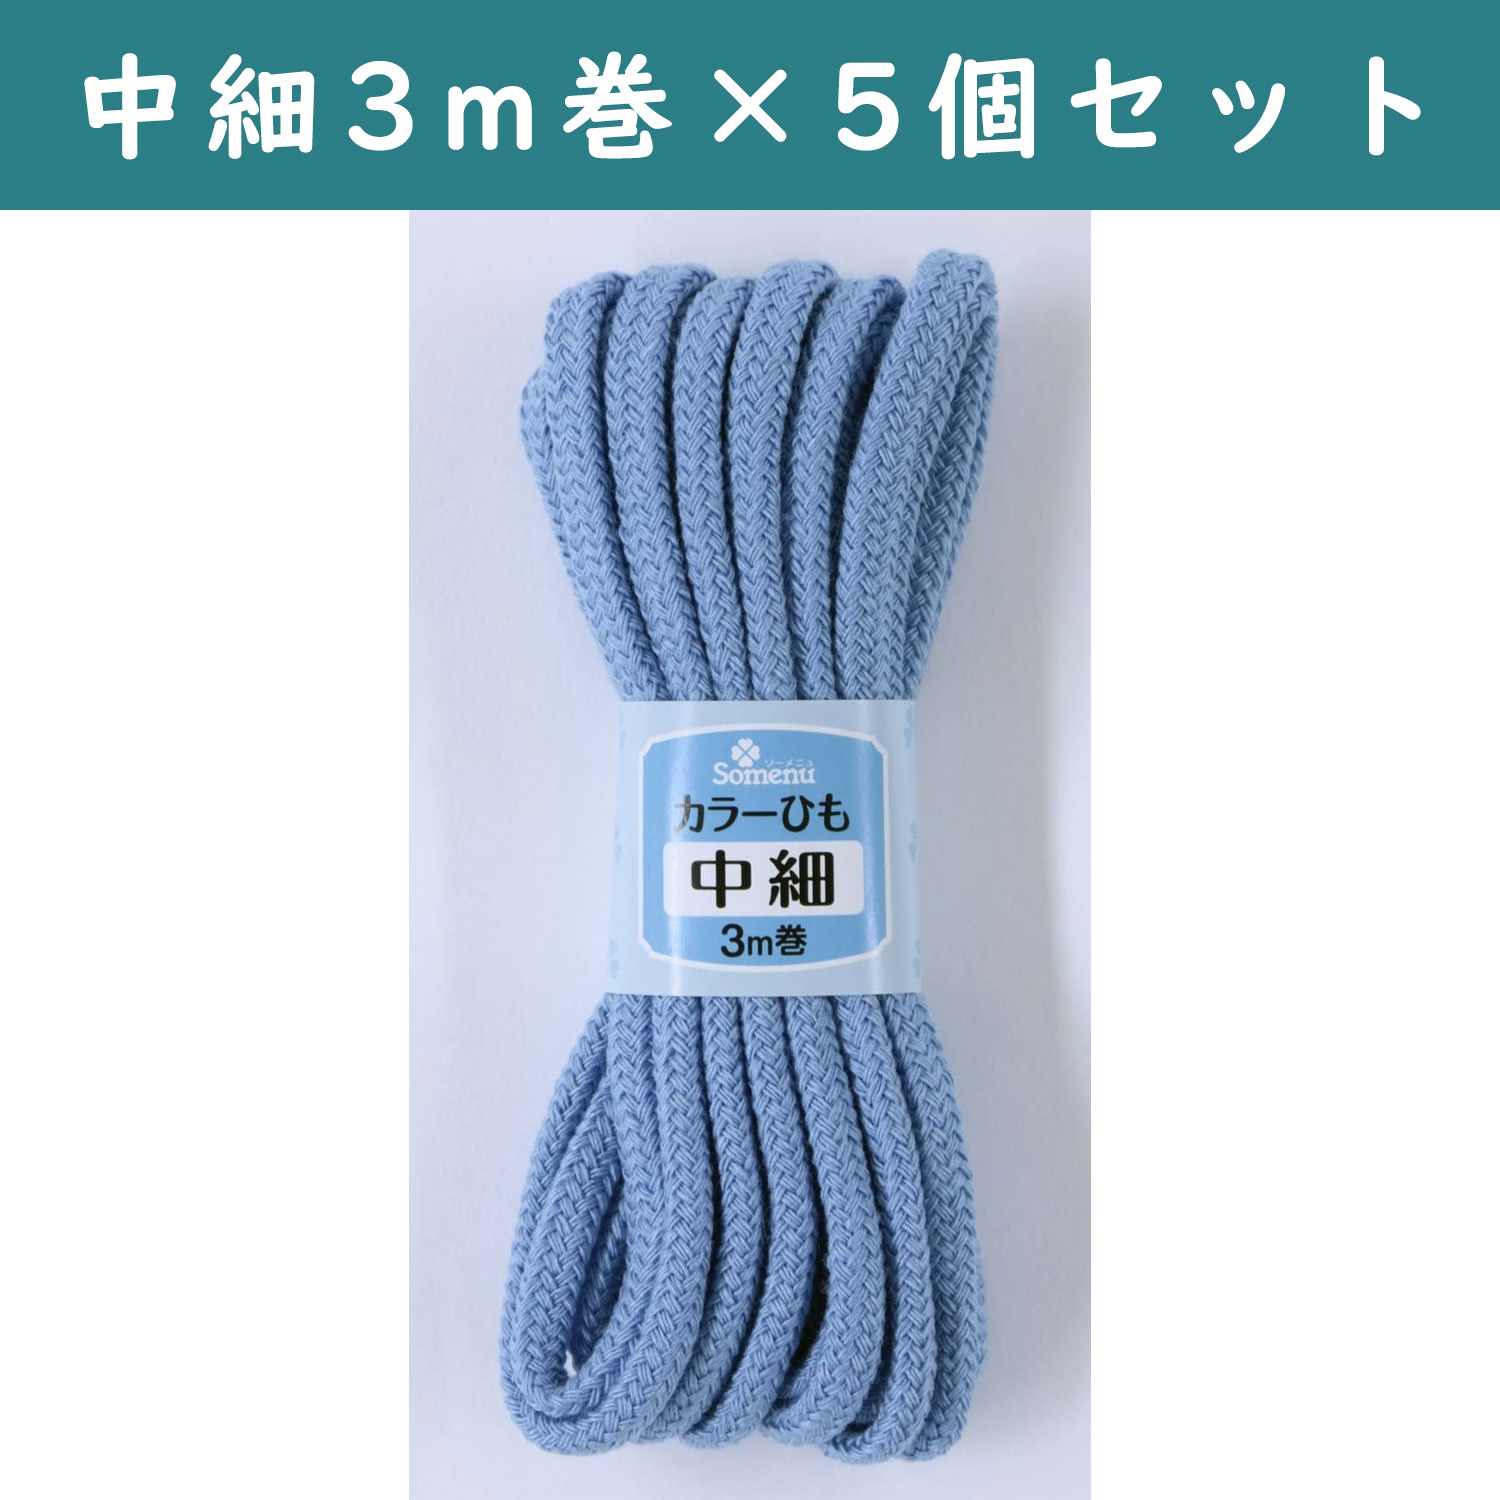 ■【5個】CL26-153-5set カラーひも 中細 3m巻 ブルー 5個セット (セット)